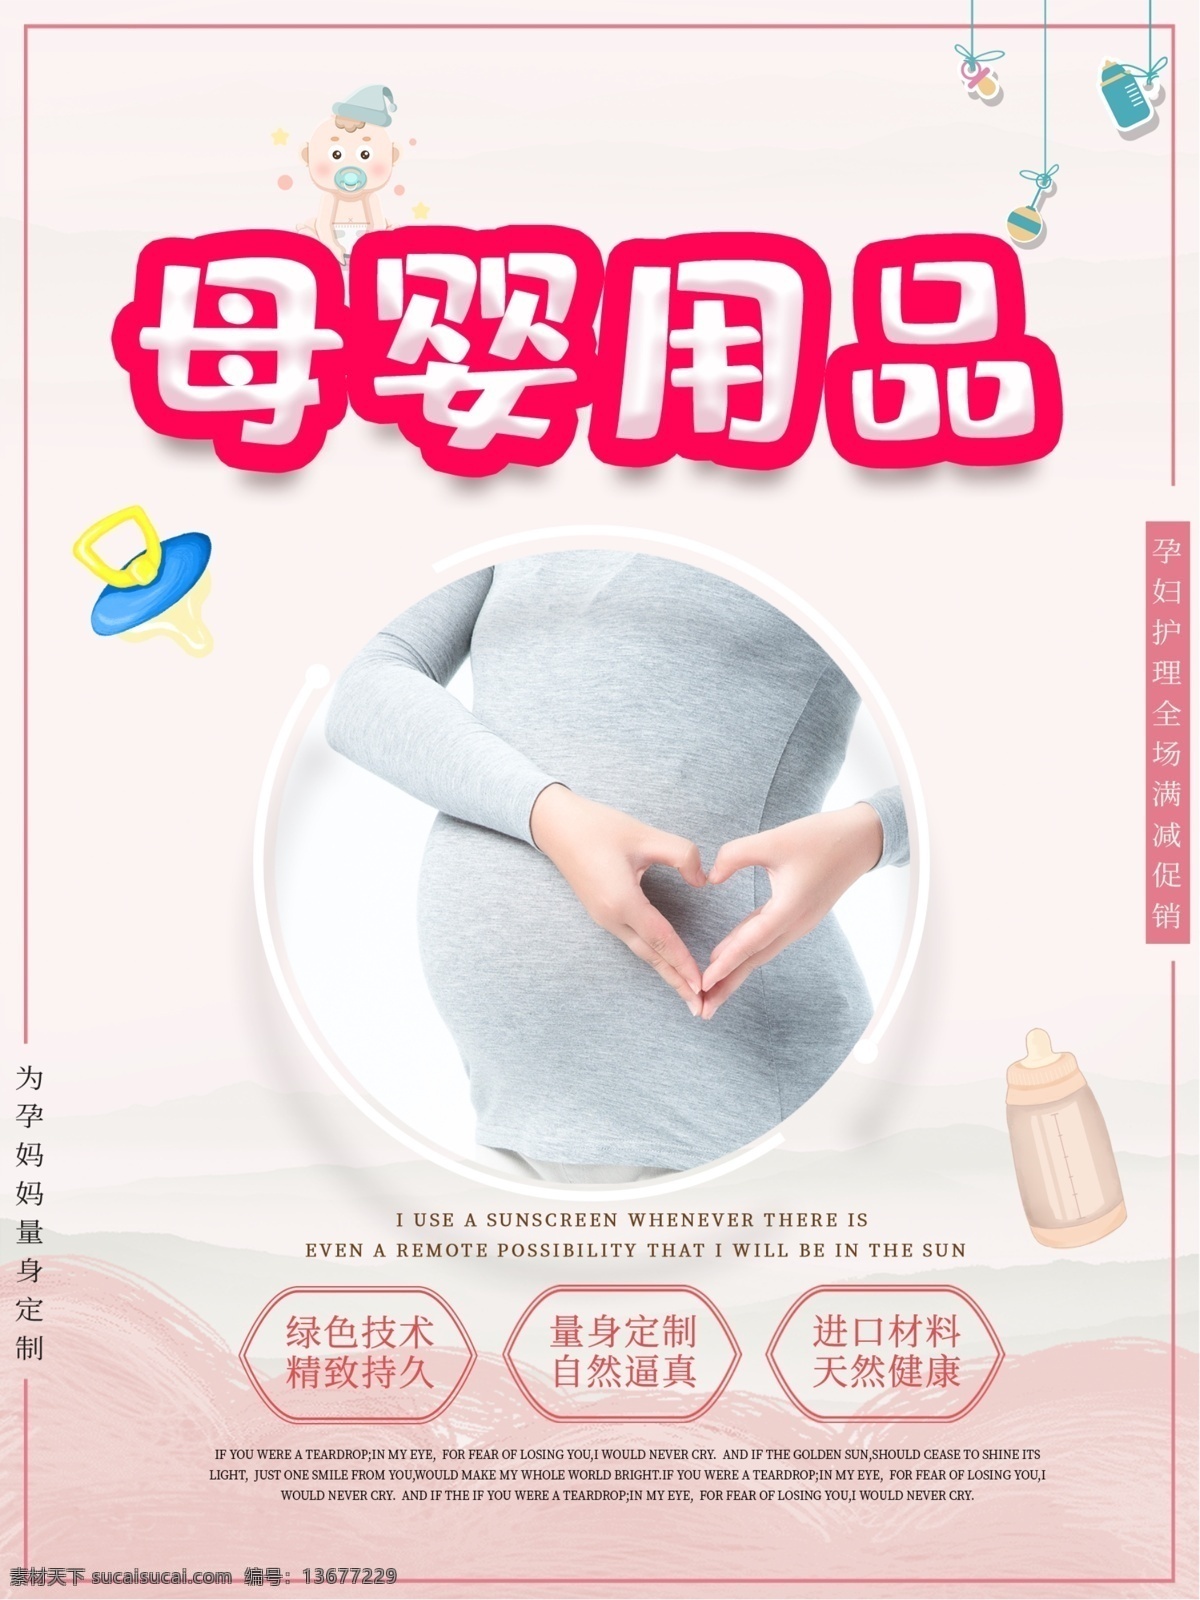 温馨 母婴 用品 宣传海报 海报 妈妈宝贝 亲子 生活馆